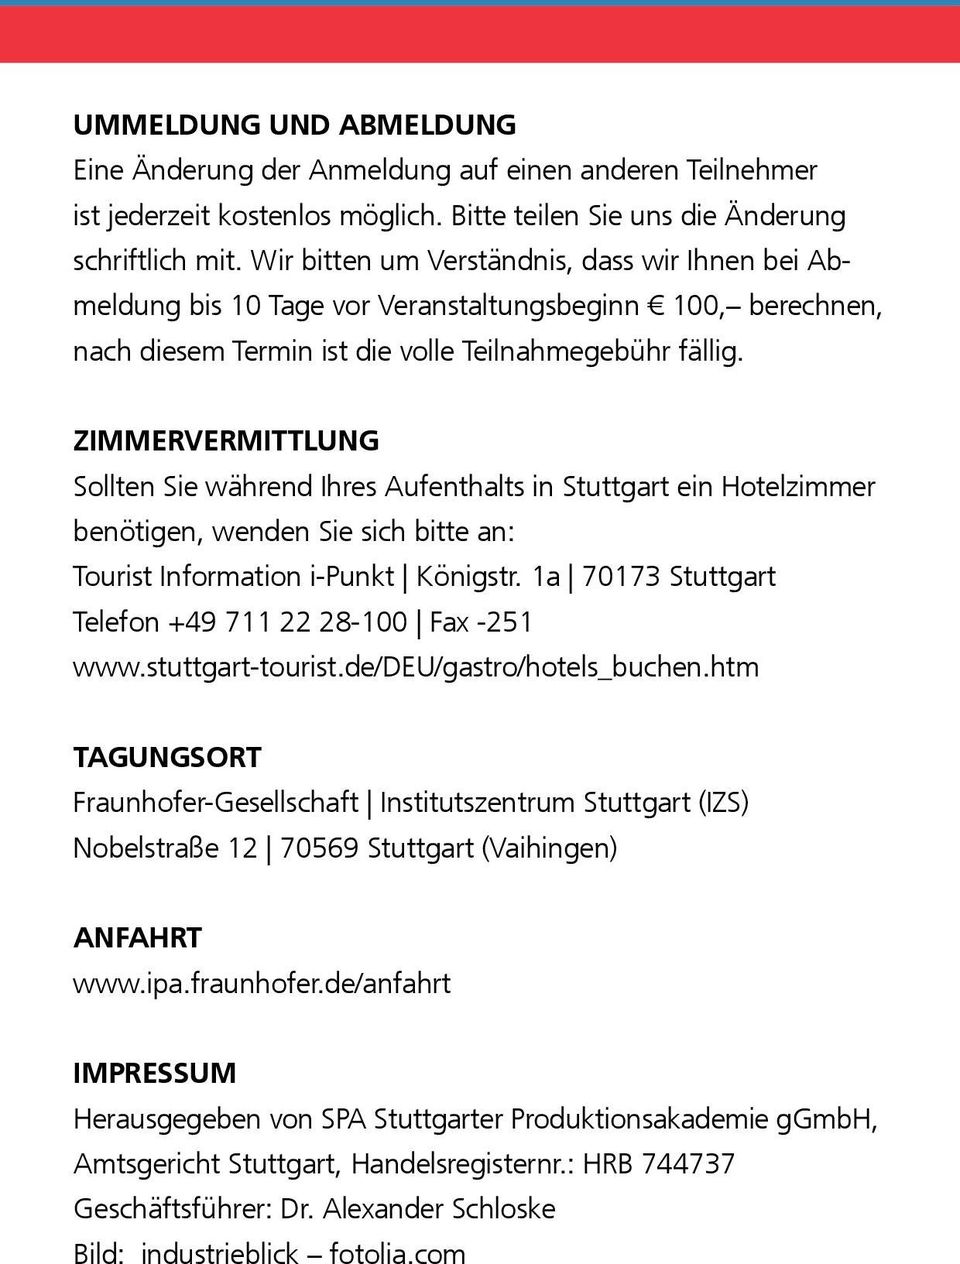 ZIMMERVERMITTLUNG Sollten Sie während Ihres Aufenthalts in Stuttgart ein Hotel zimmer benötigen, wenden Sie sich bitte an: Tourist Information i-punkt Königstr.